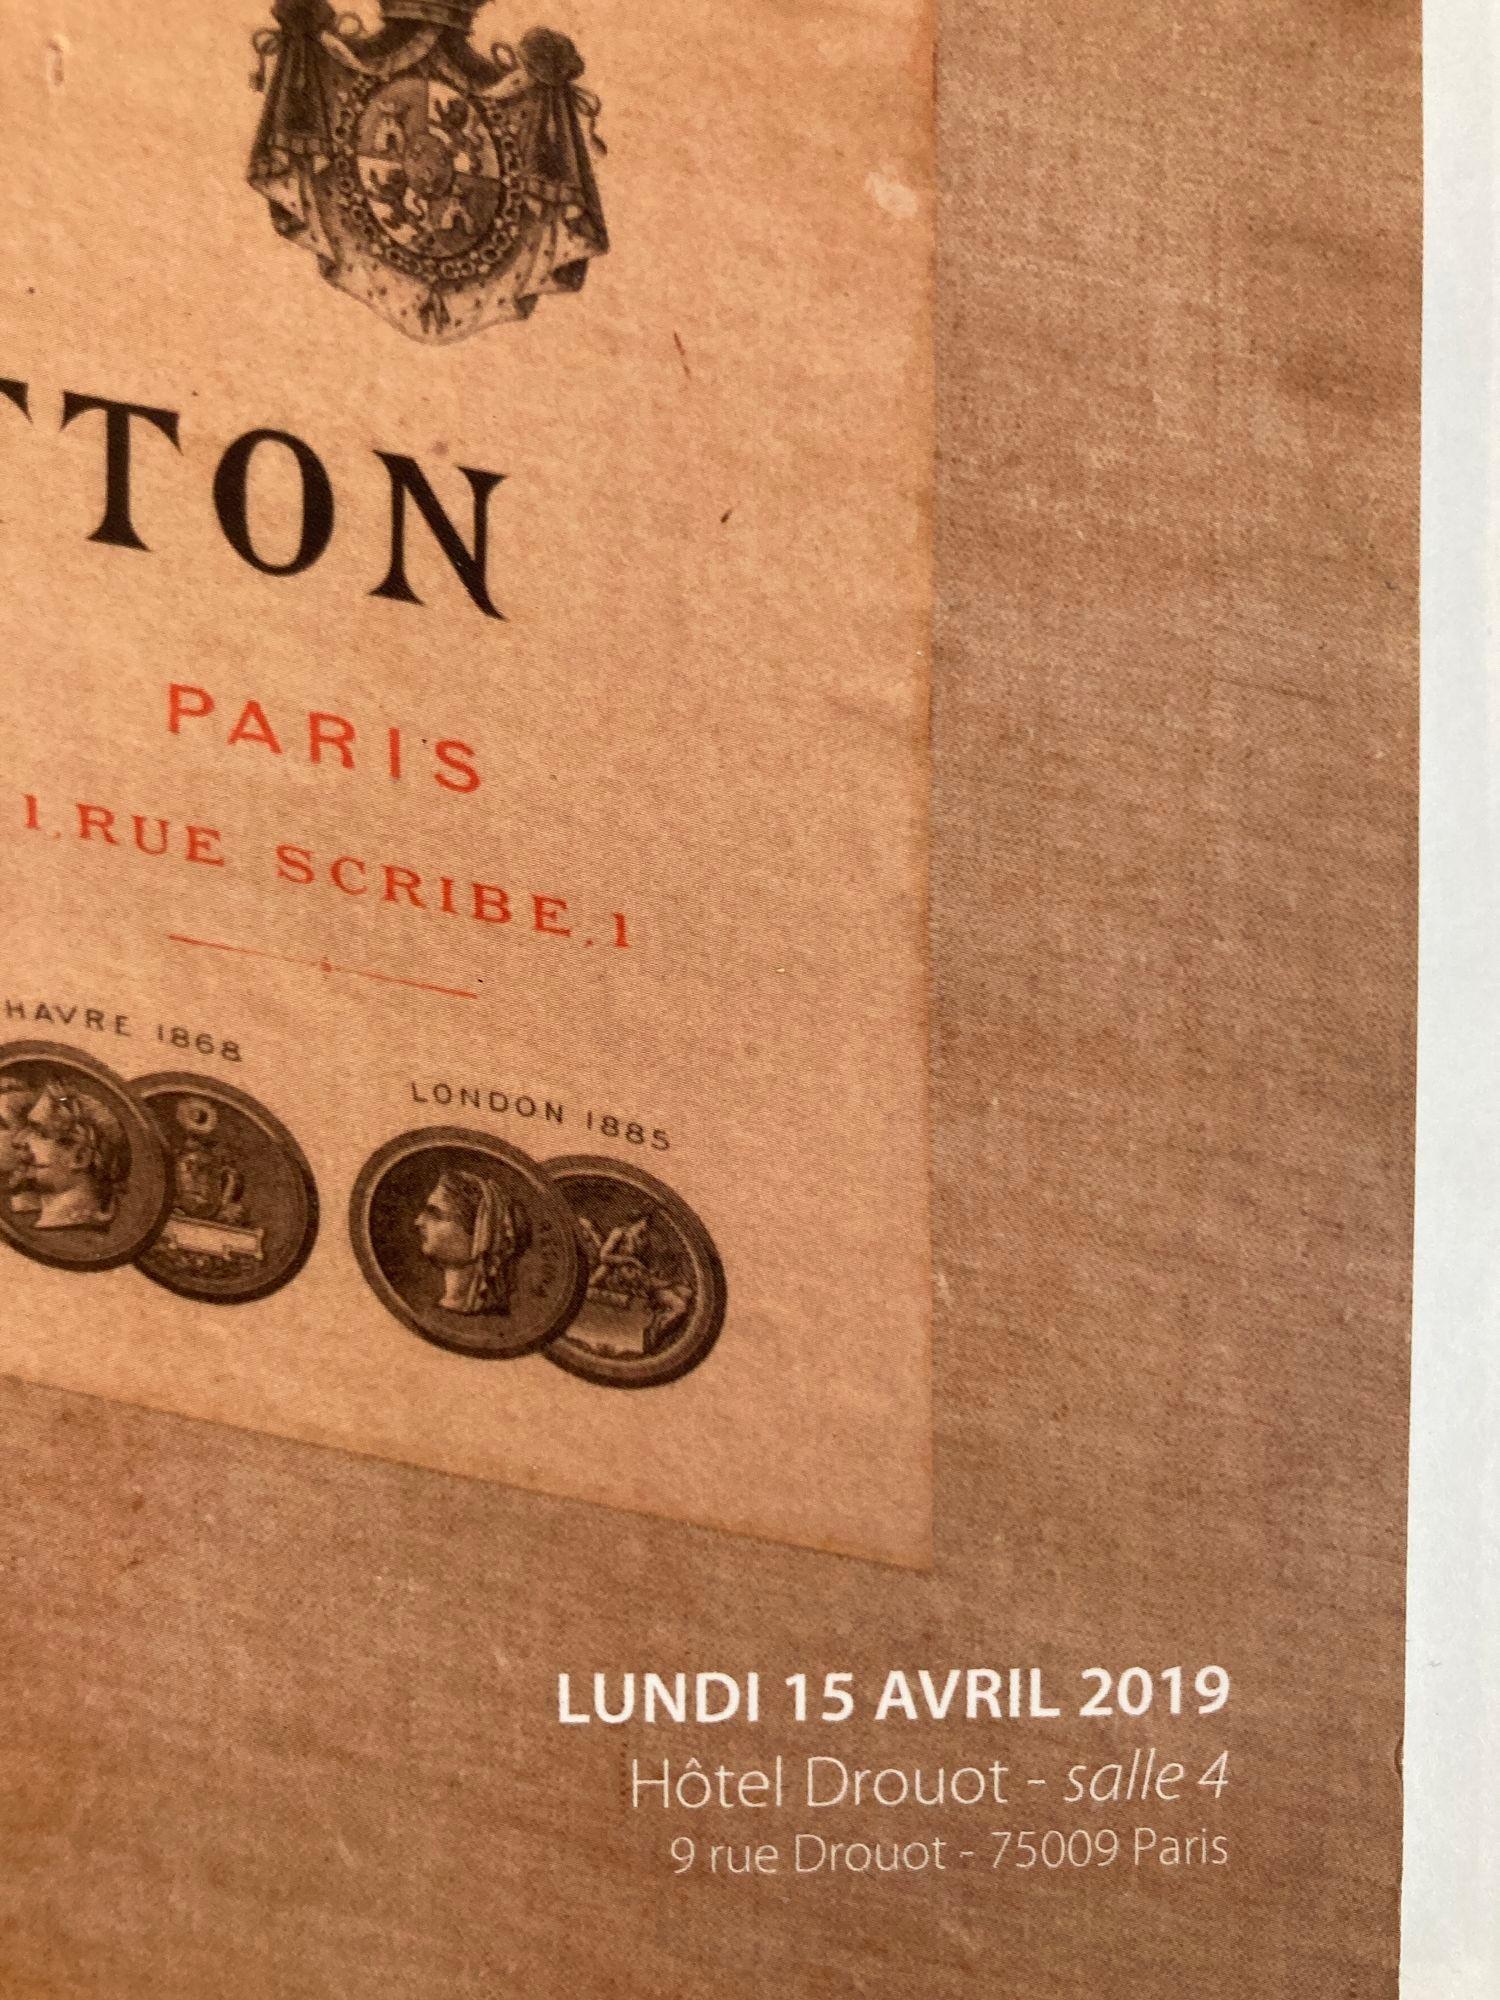 French Louis Vuitton Paris Auction Catalog 2019 by Gros & Delettrez For Sale